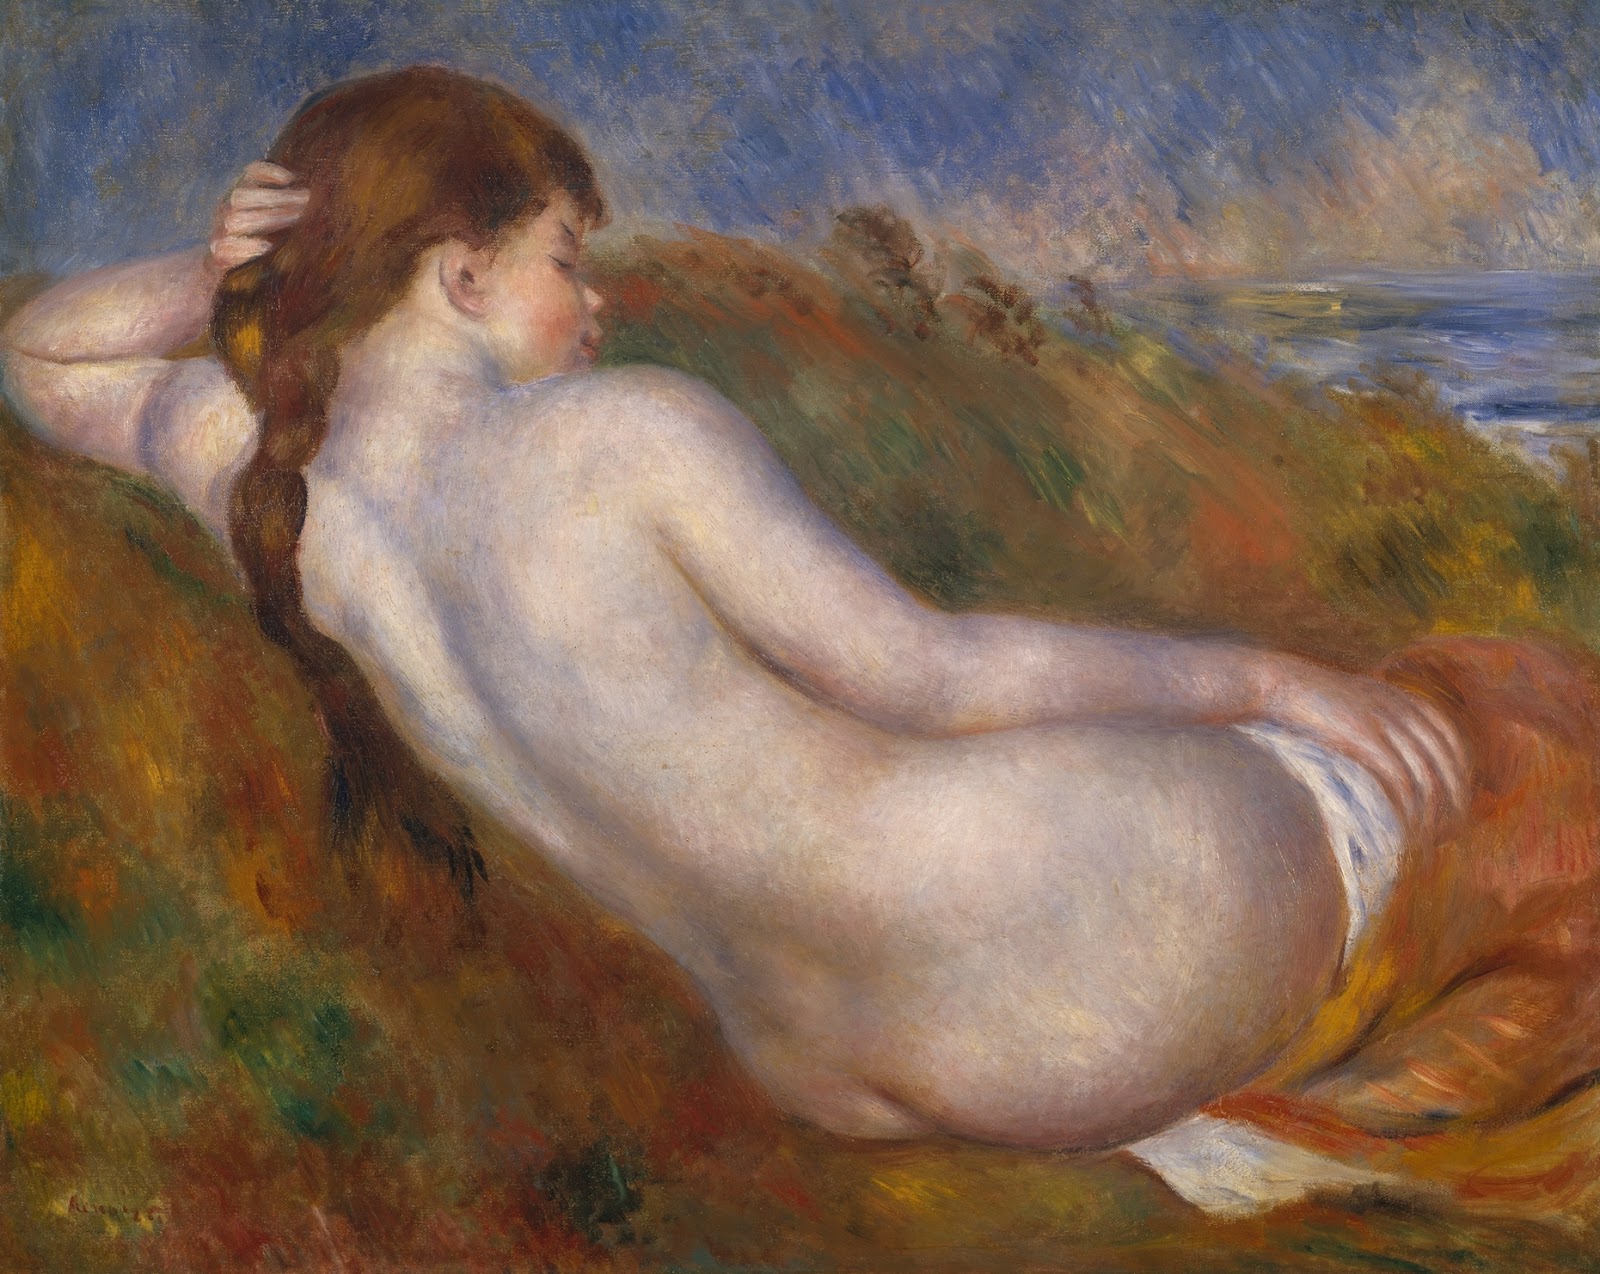 Pierre+Auguste+Renoir-1841-1-19 (625).jpg